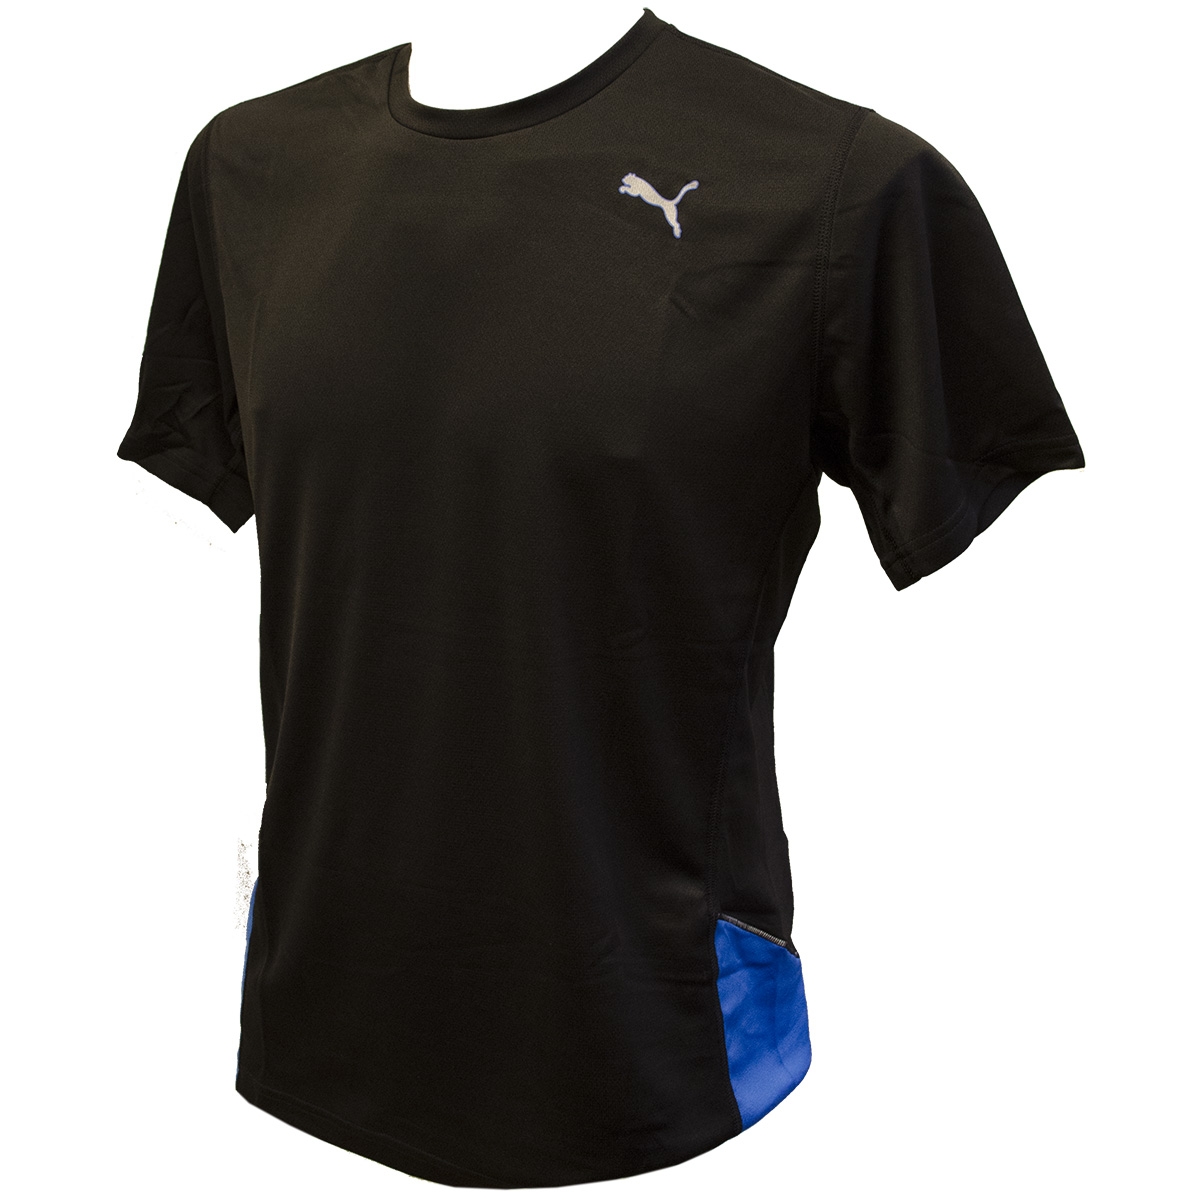 Puma PE T-Shirt Blk/blu